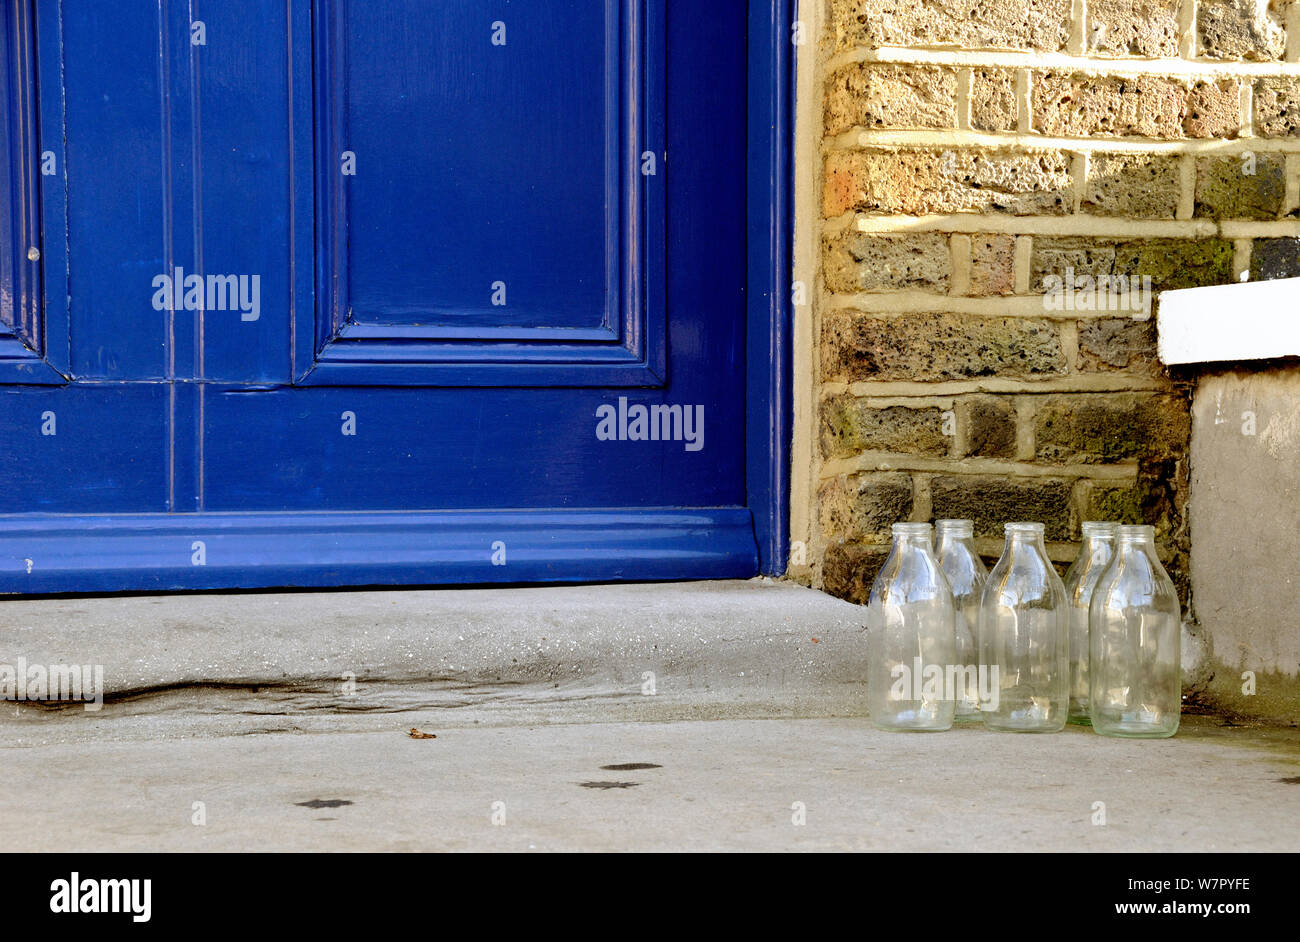 Cinq bouteilles de lait en verre vide sur le démarchage, London Borough of Islington, England, UK Banque D'Images